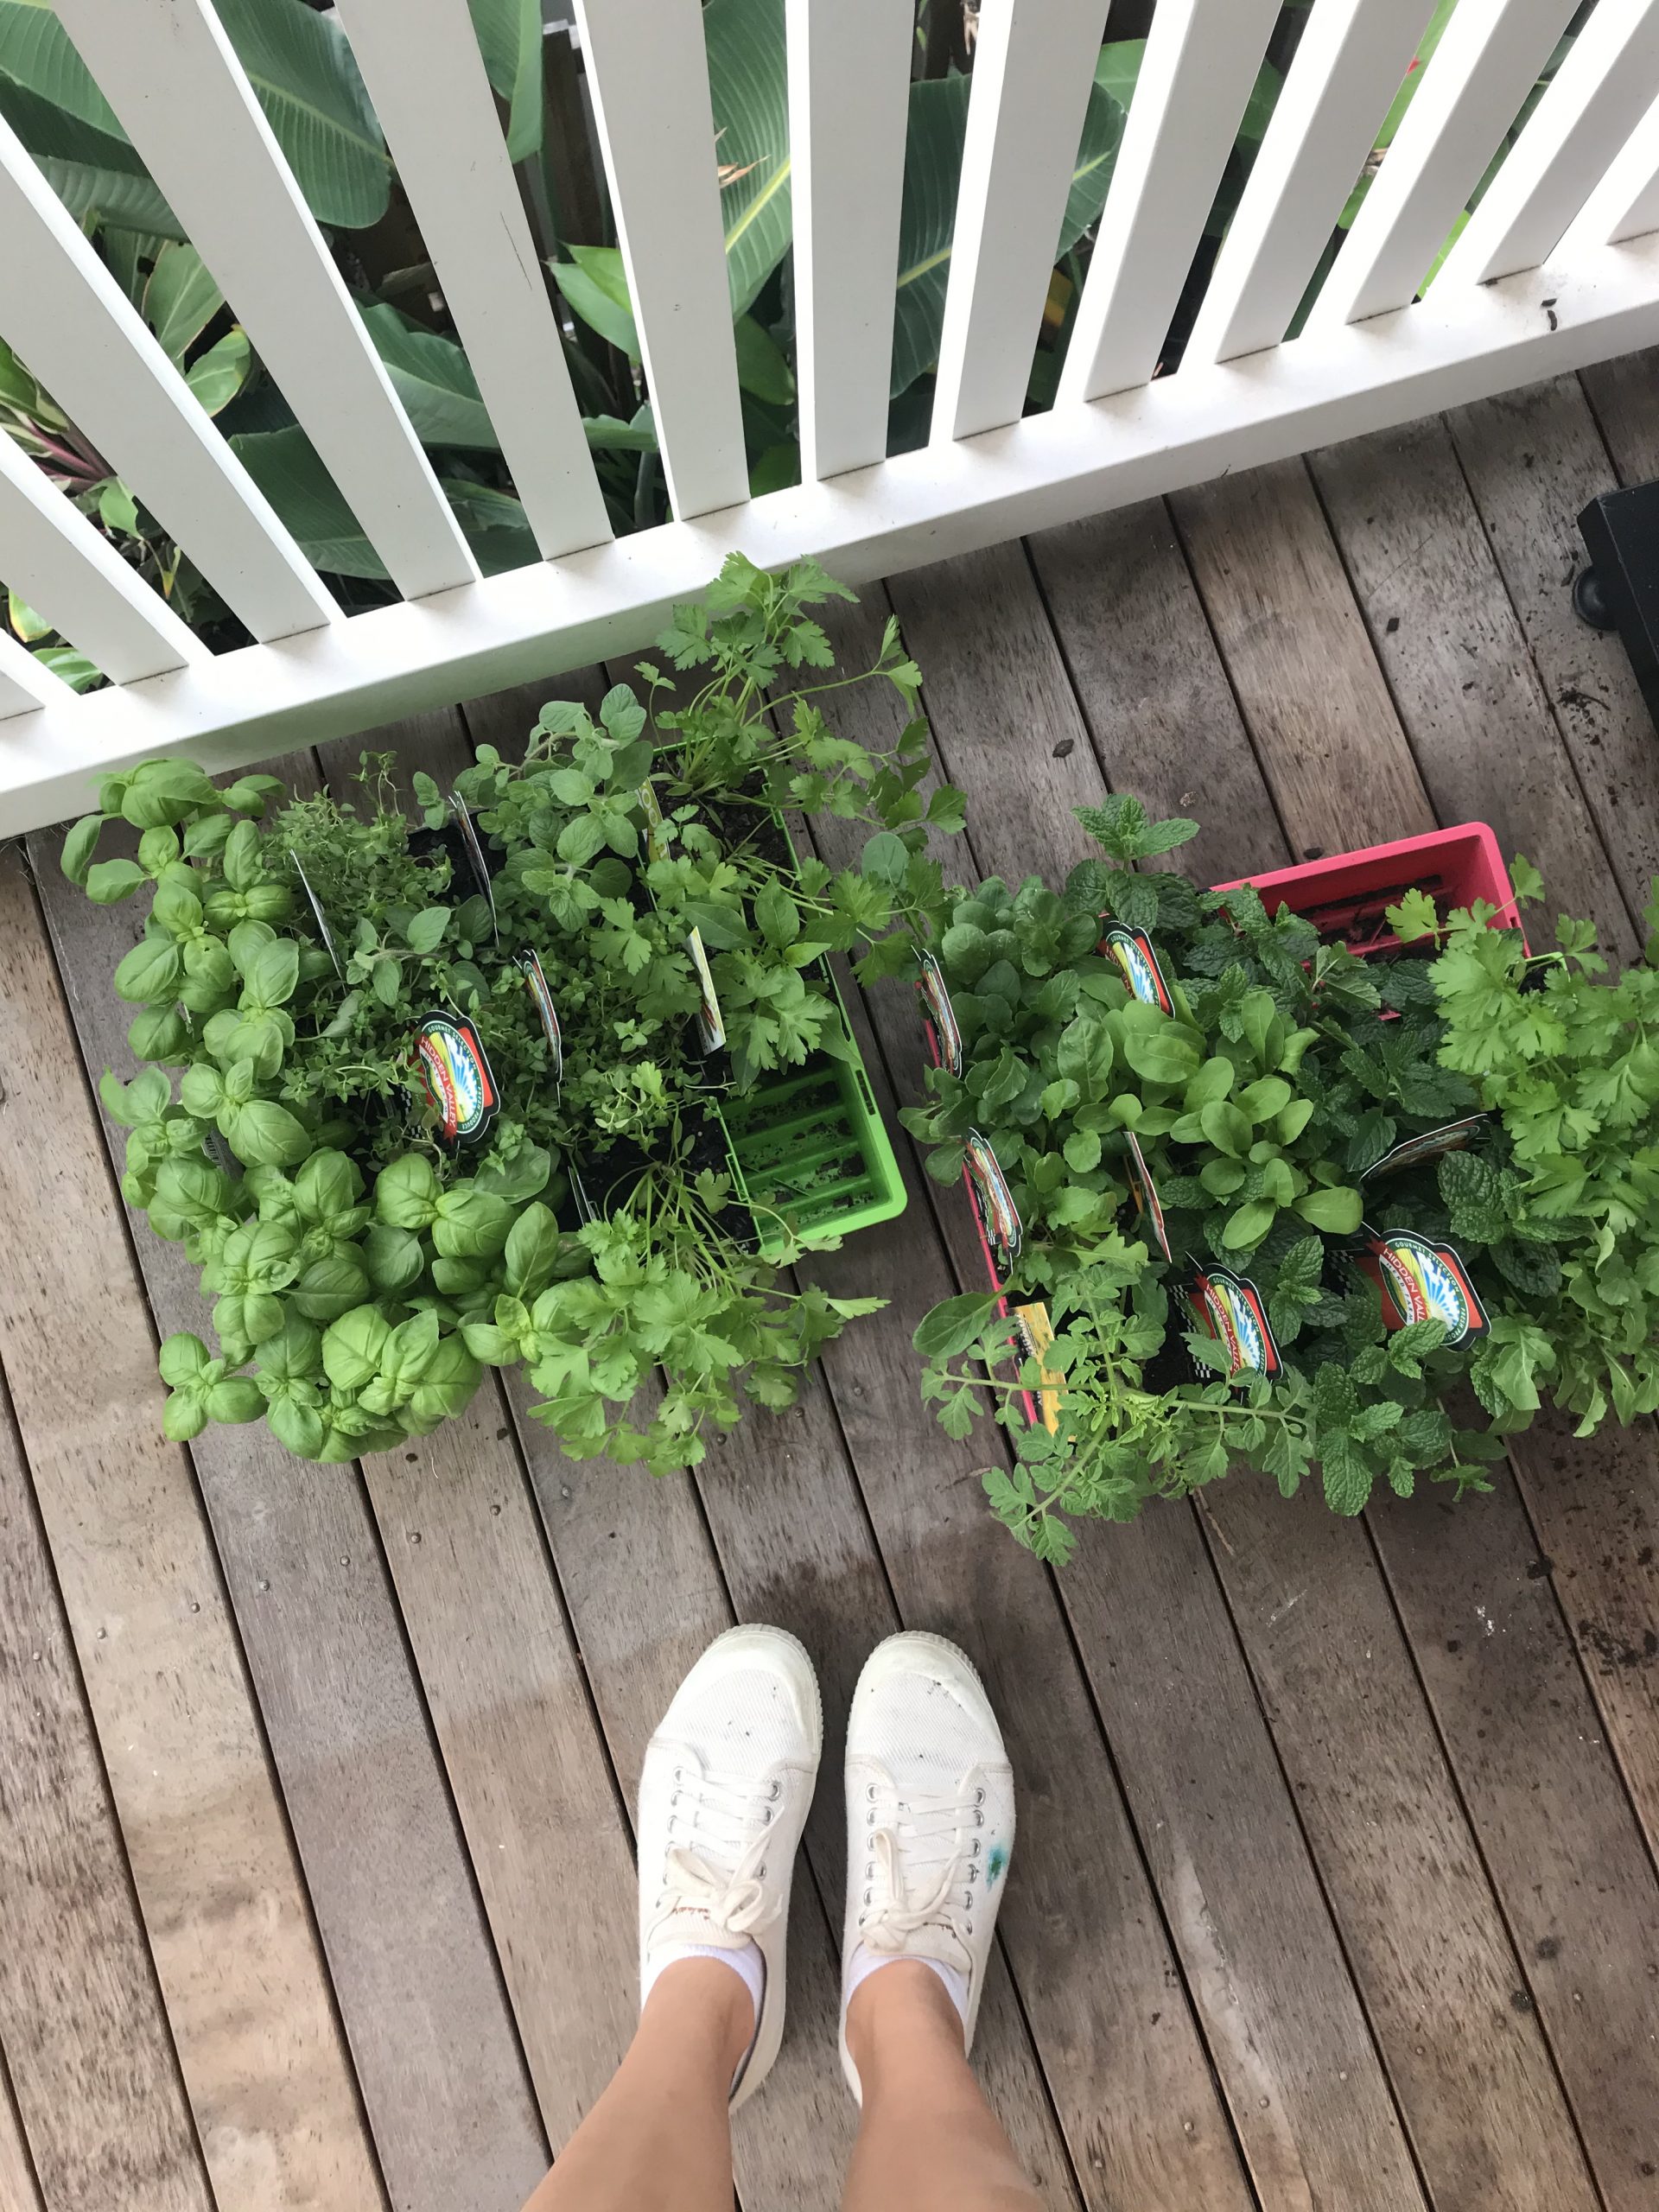 Setting up a vertical herb garden